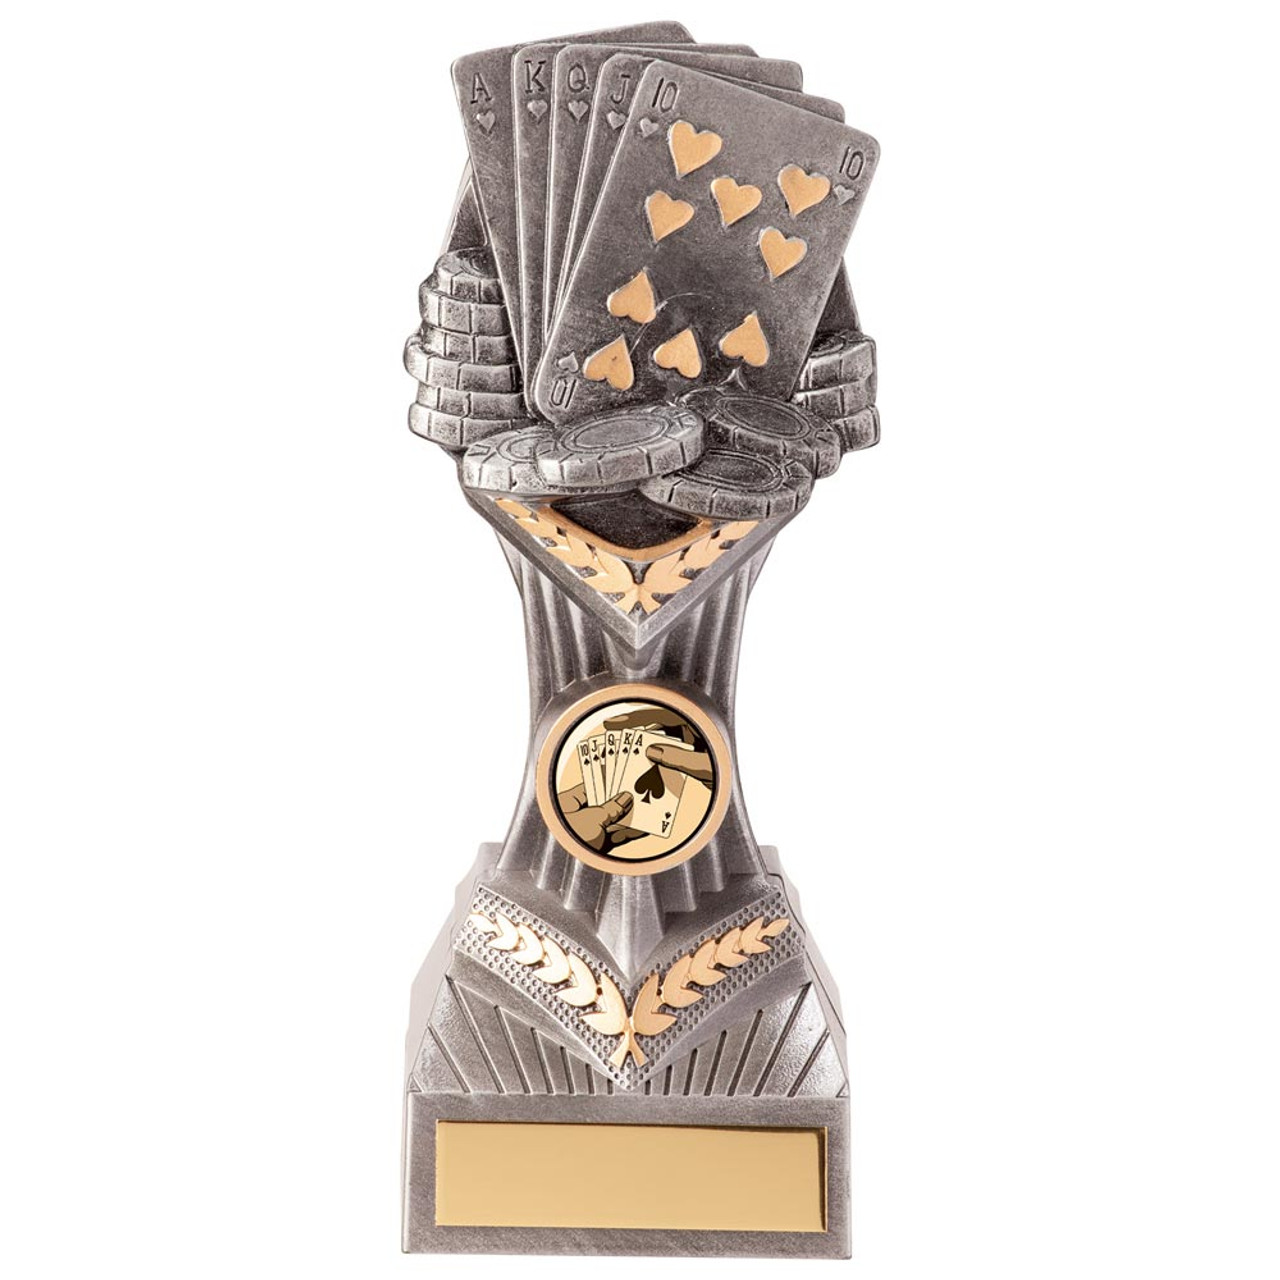 Poker Trophy Falcon Poker Silver & Gold Award Free Engraving